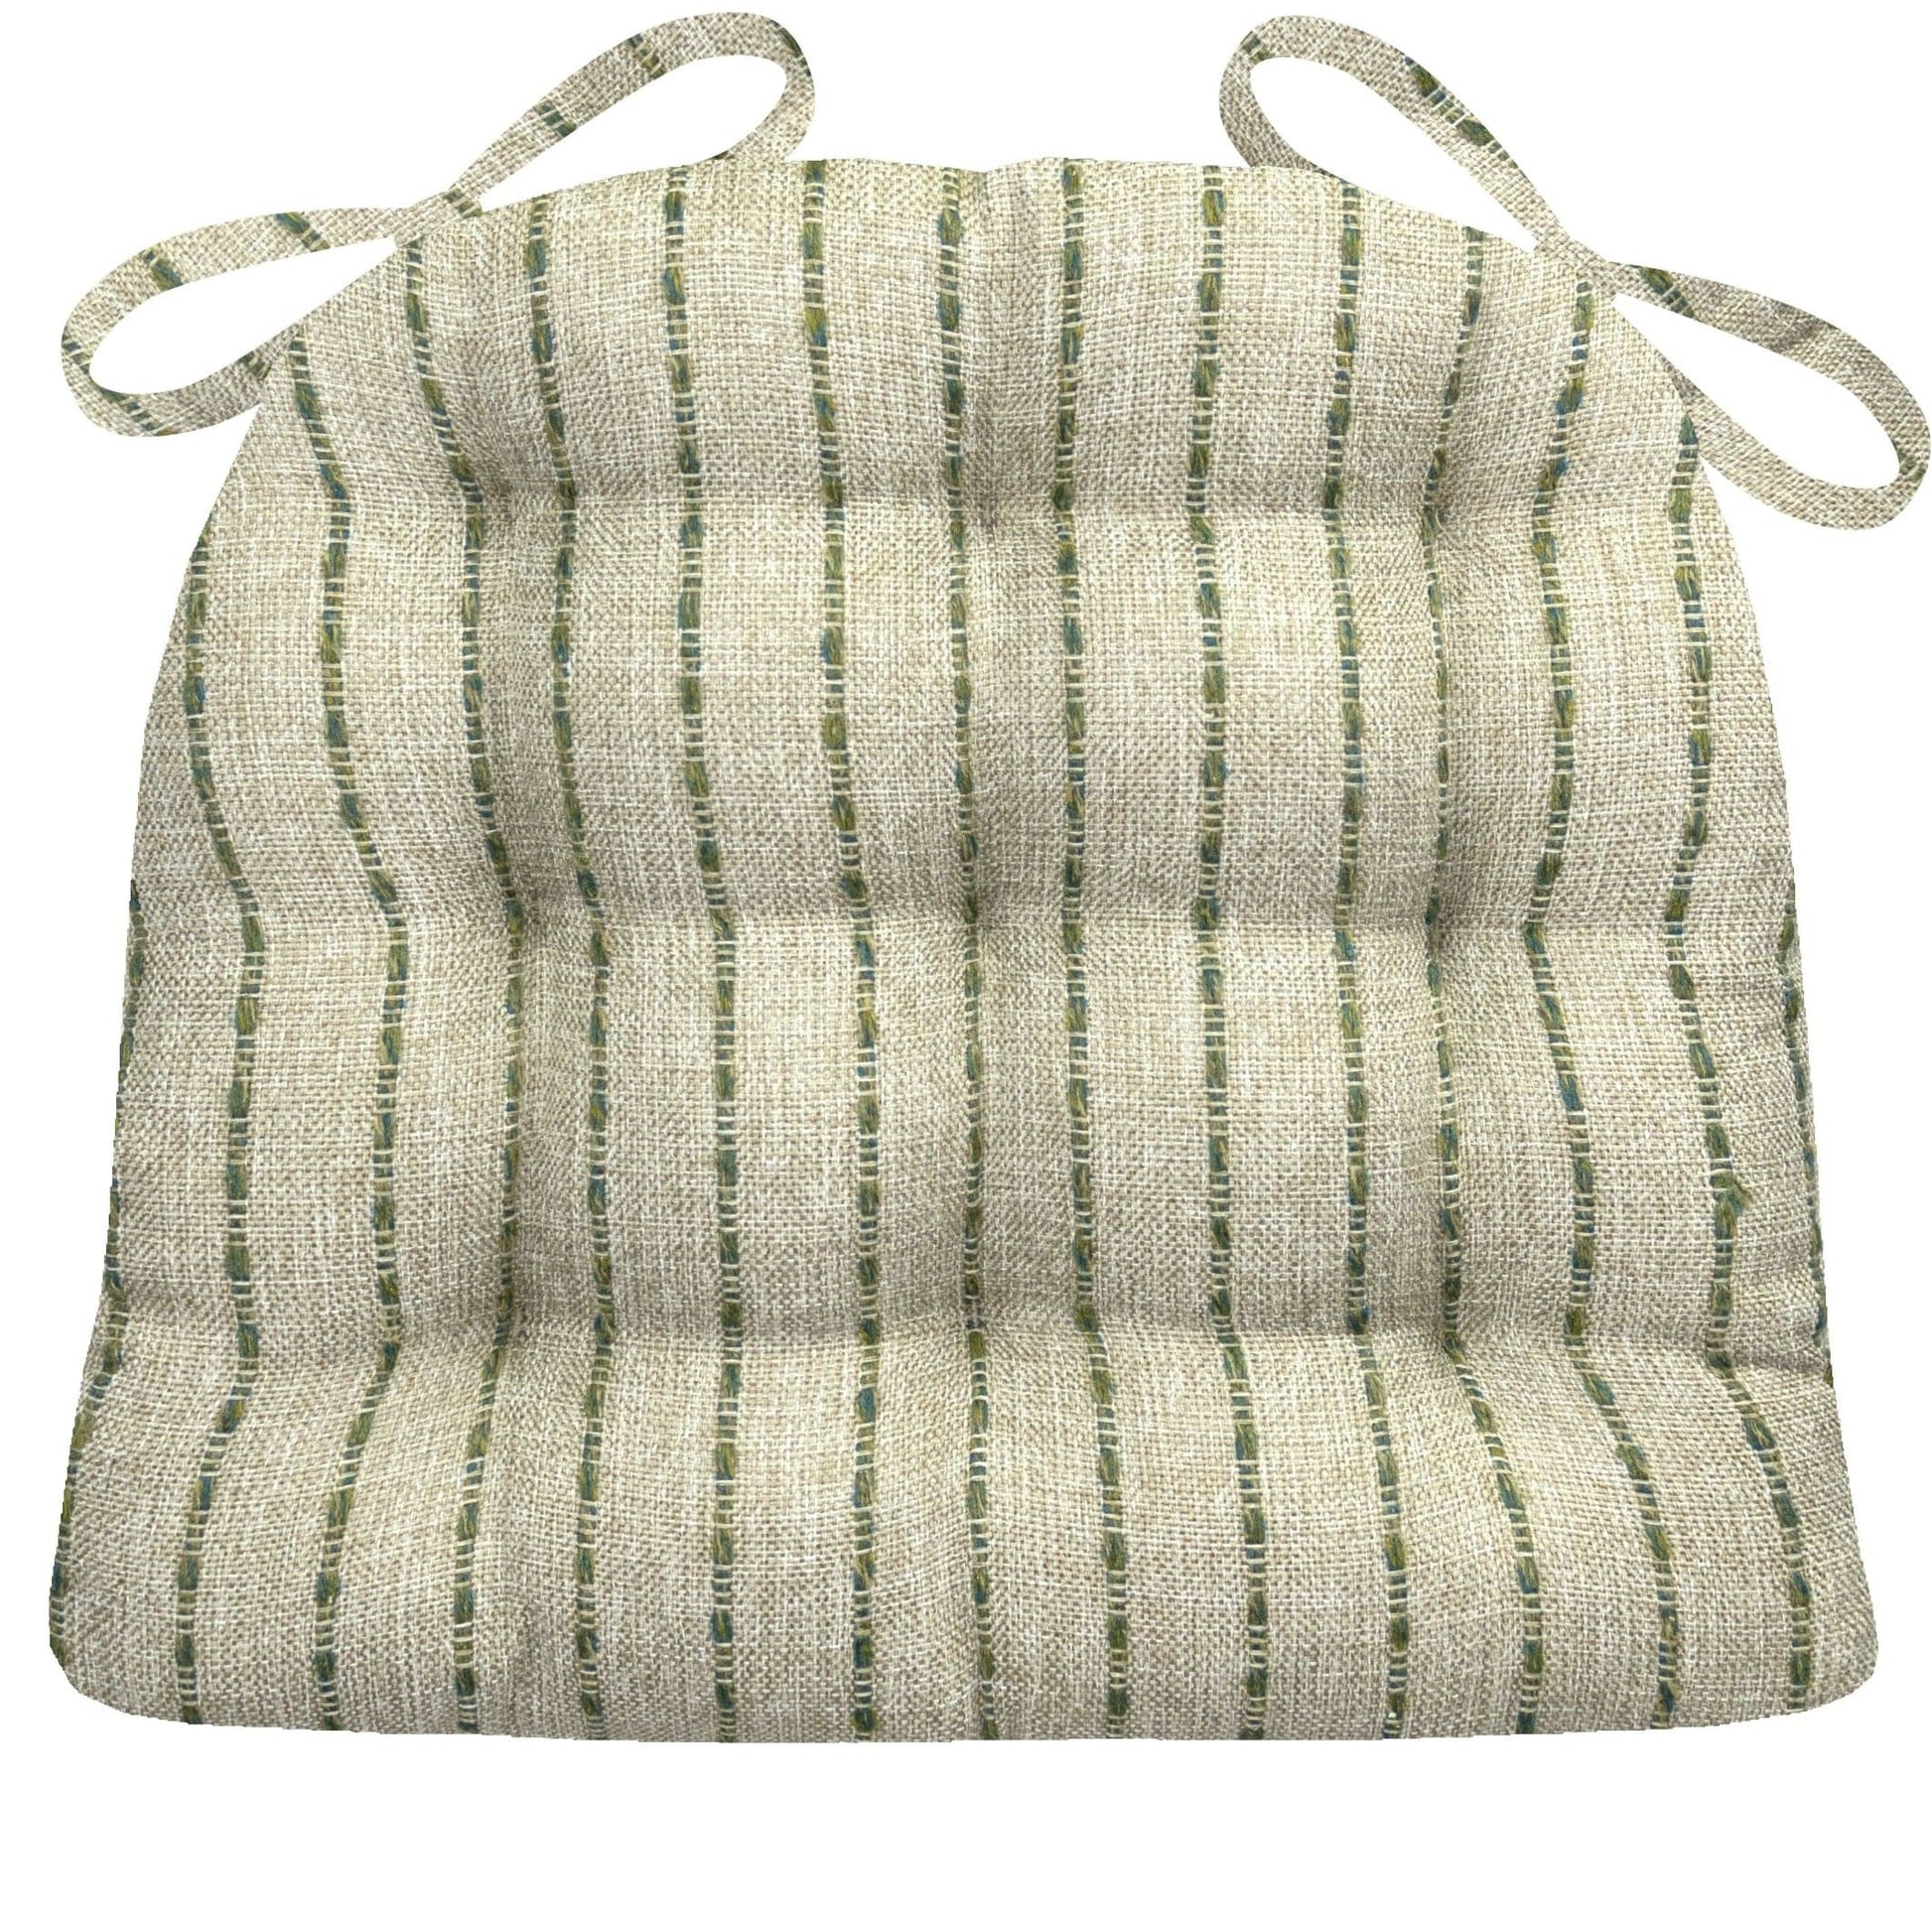 Avante Stripe Green Dining Chair Cushions